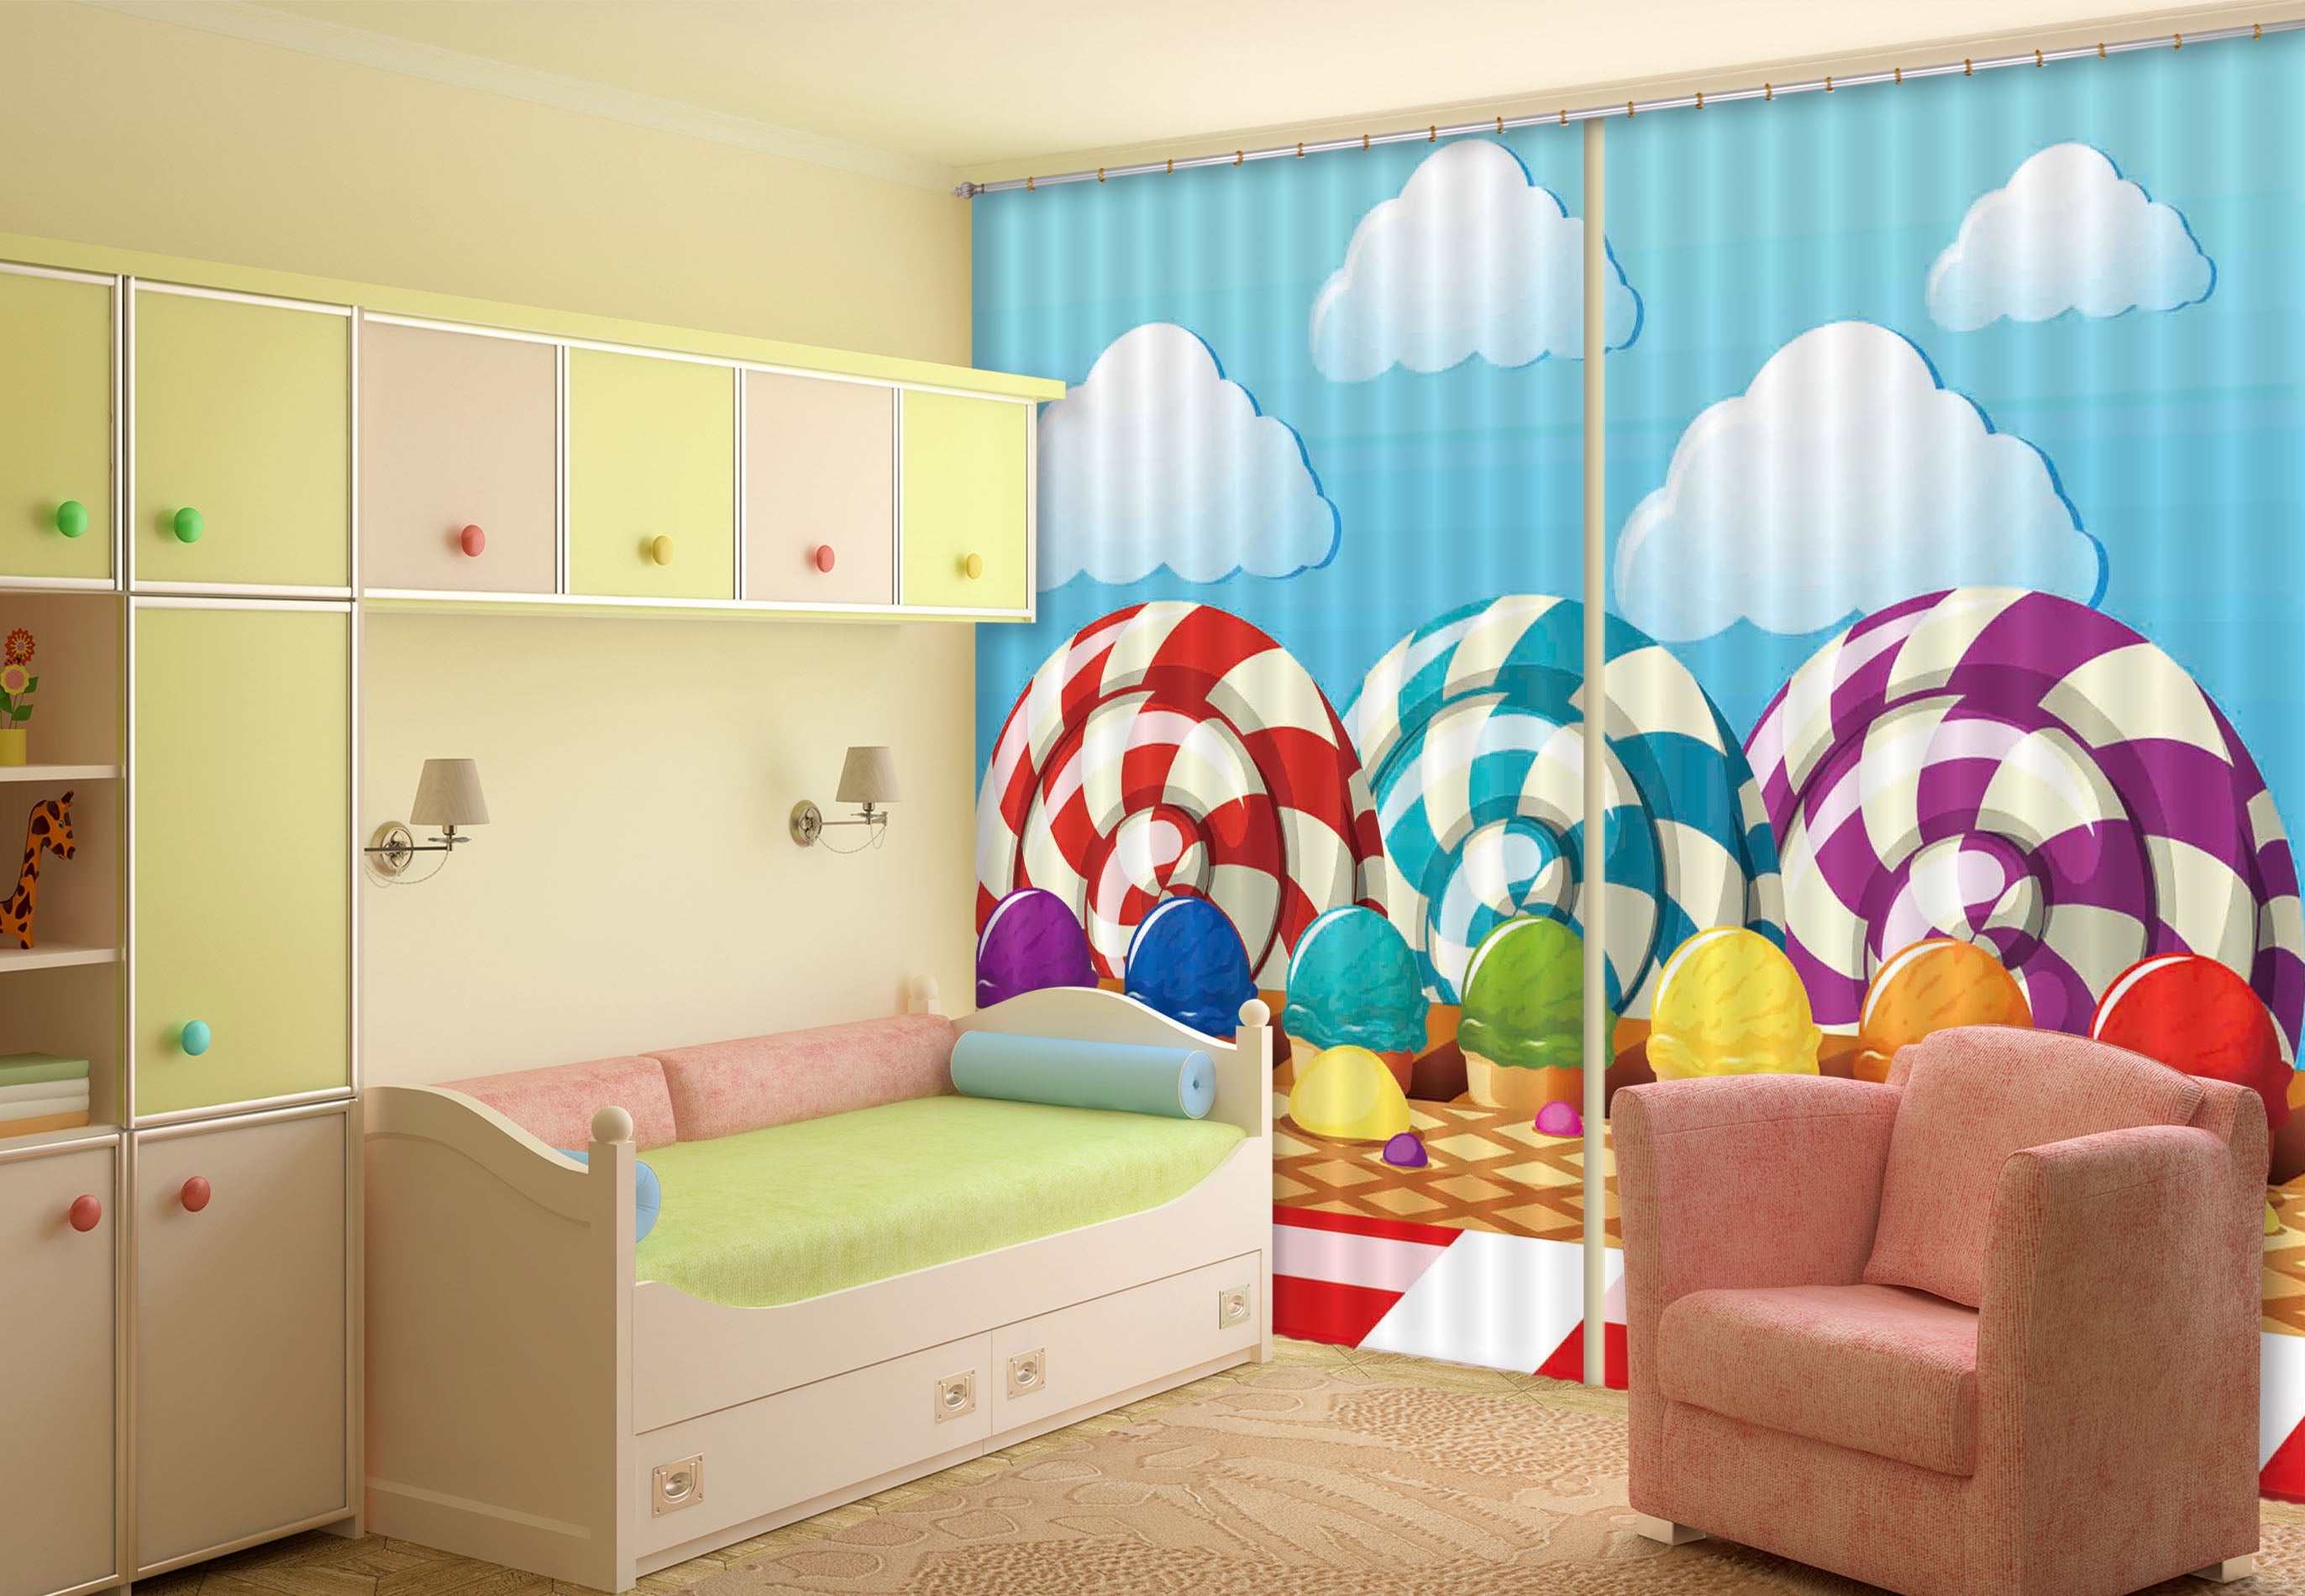 3D Lollipop Kingdom 721 Curtains Drapes